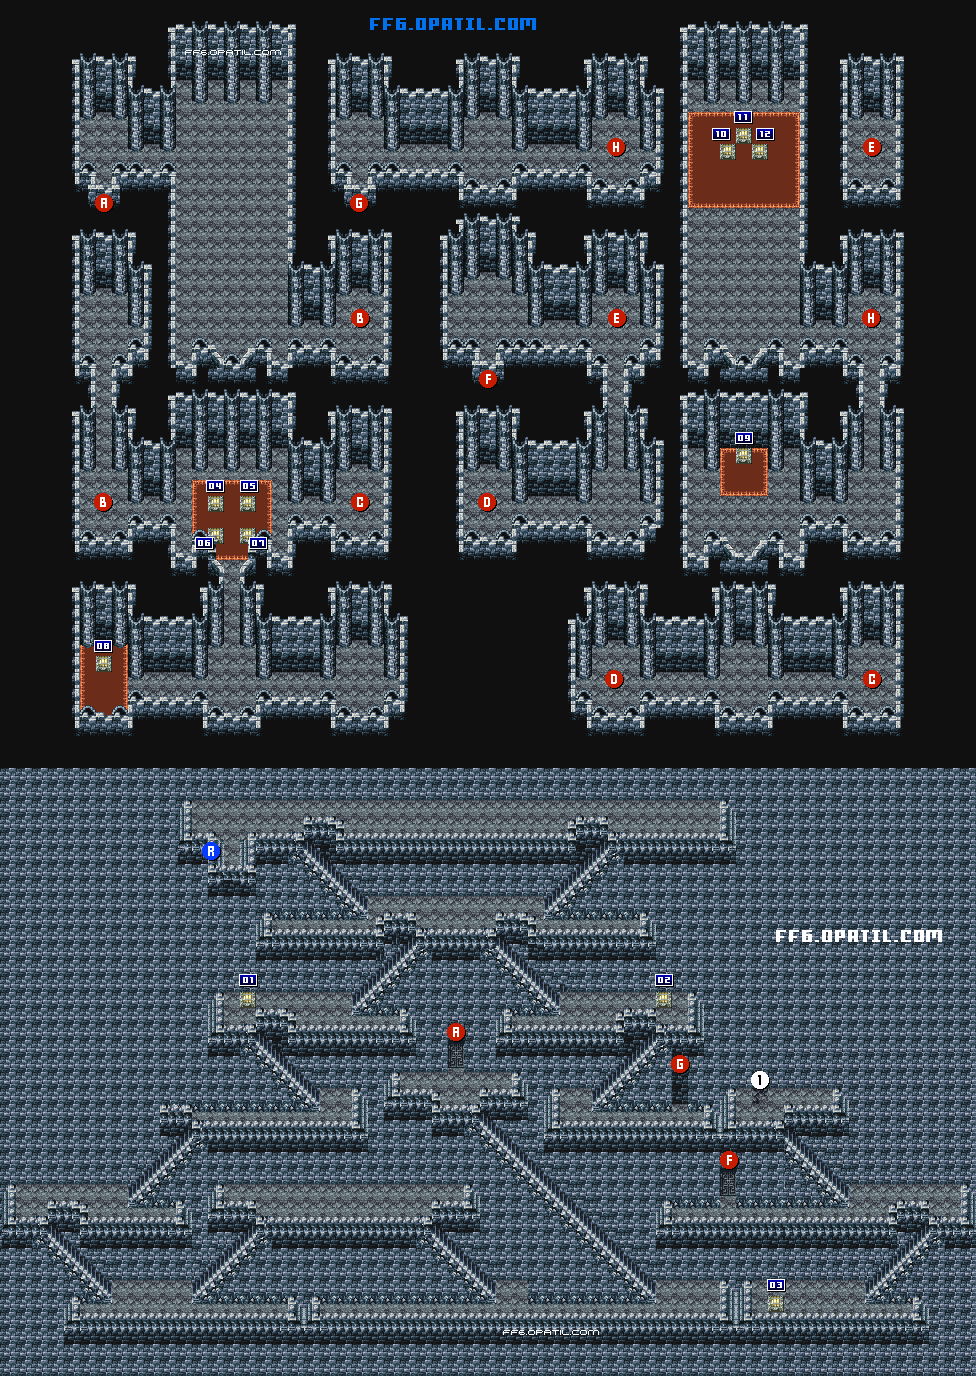 竜の神殿回廊・竜の神殿宝物庫（竜の巣） マップ画像：ファイナルファンタジー6 攻略